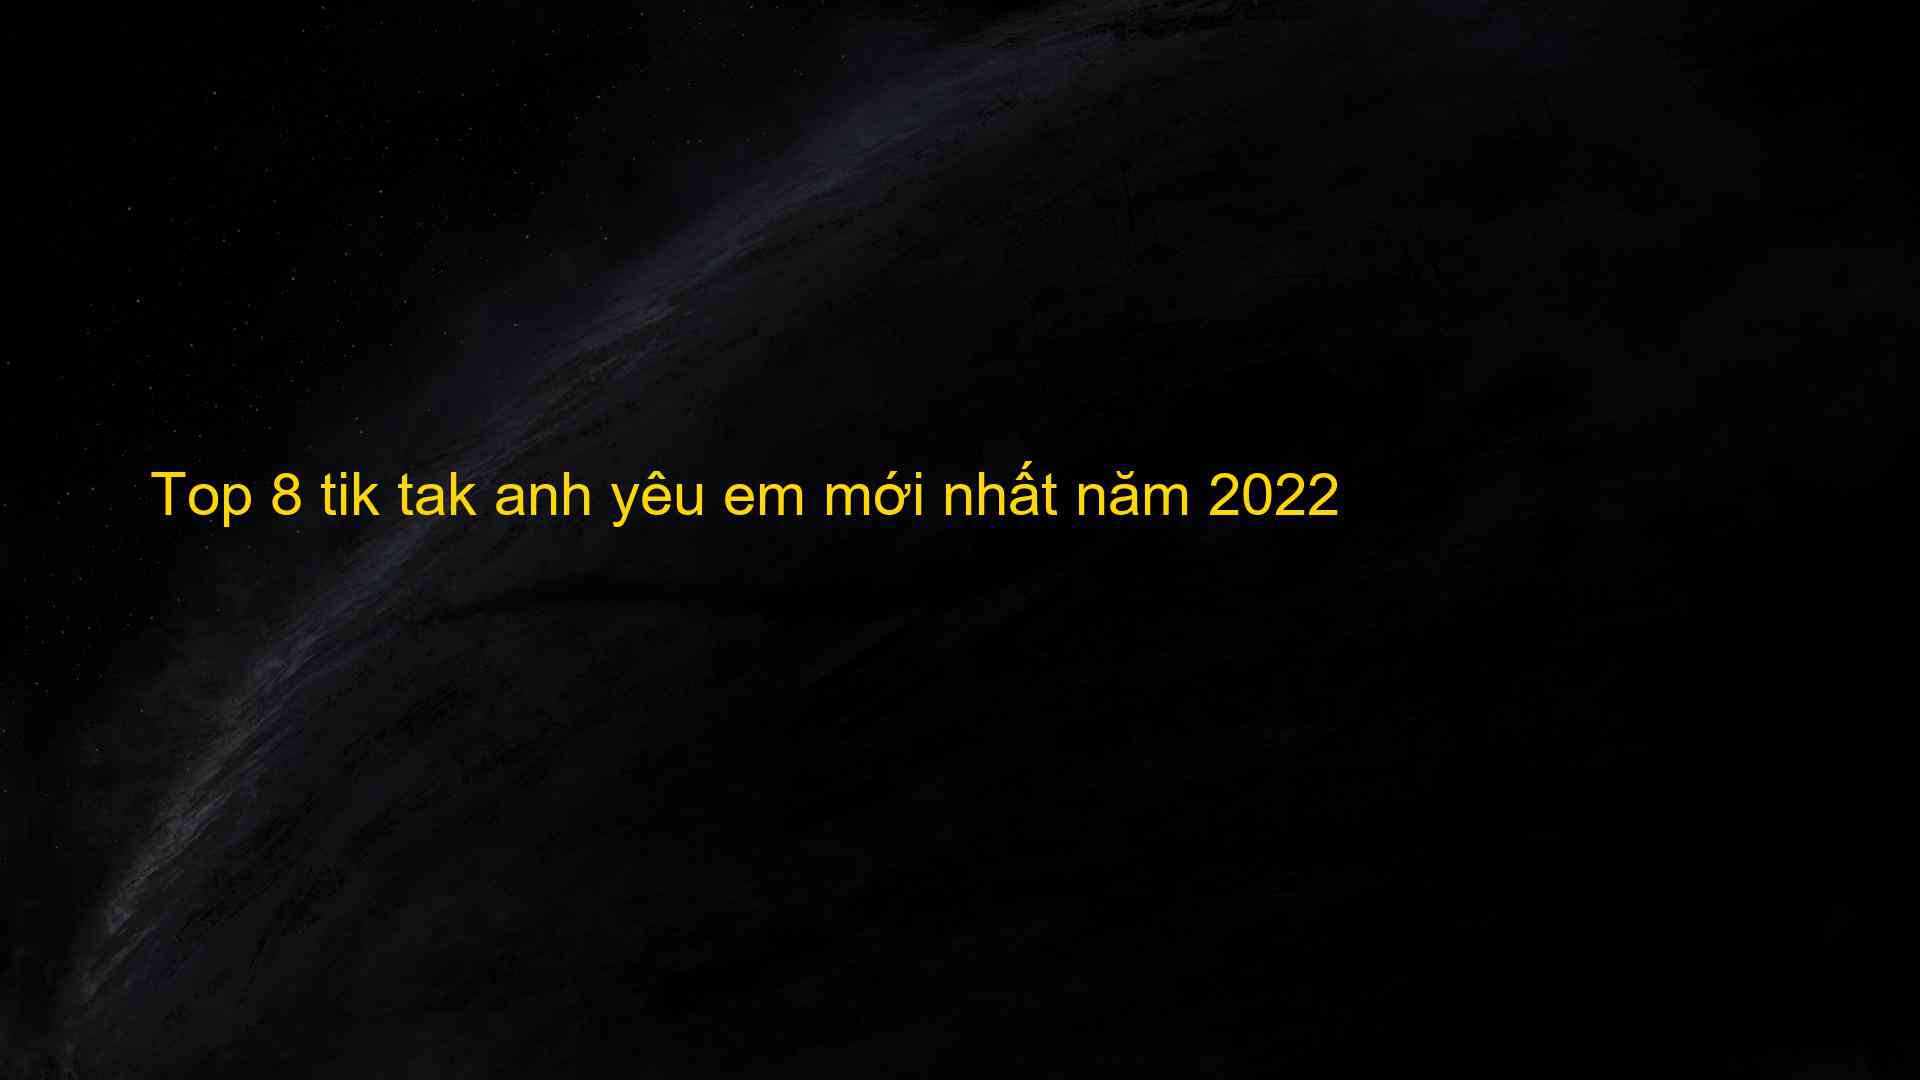 Top 8 tik tak anh yêu em mới nhất năm 2022 - Kiến Thức Cho Người lao Động Việt Nam